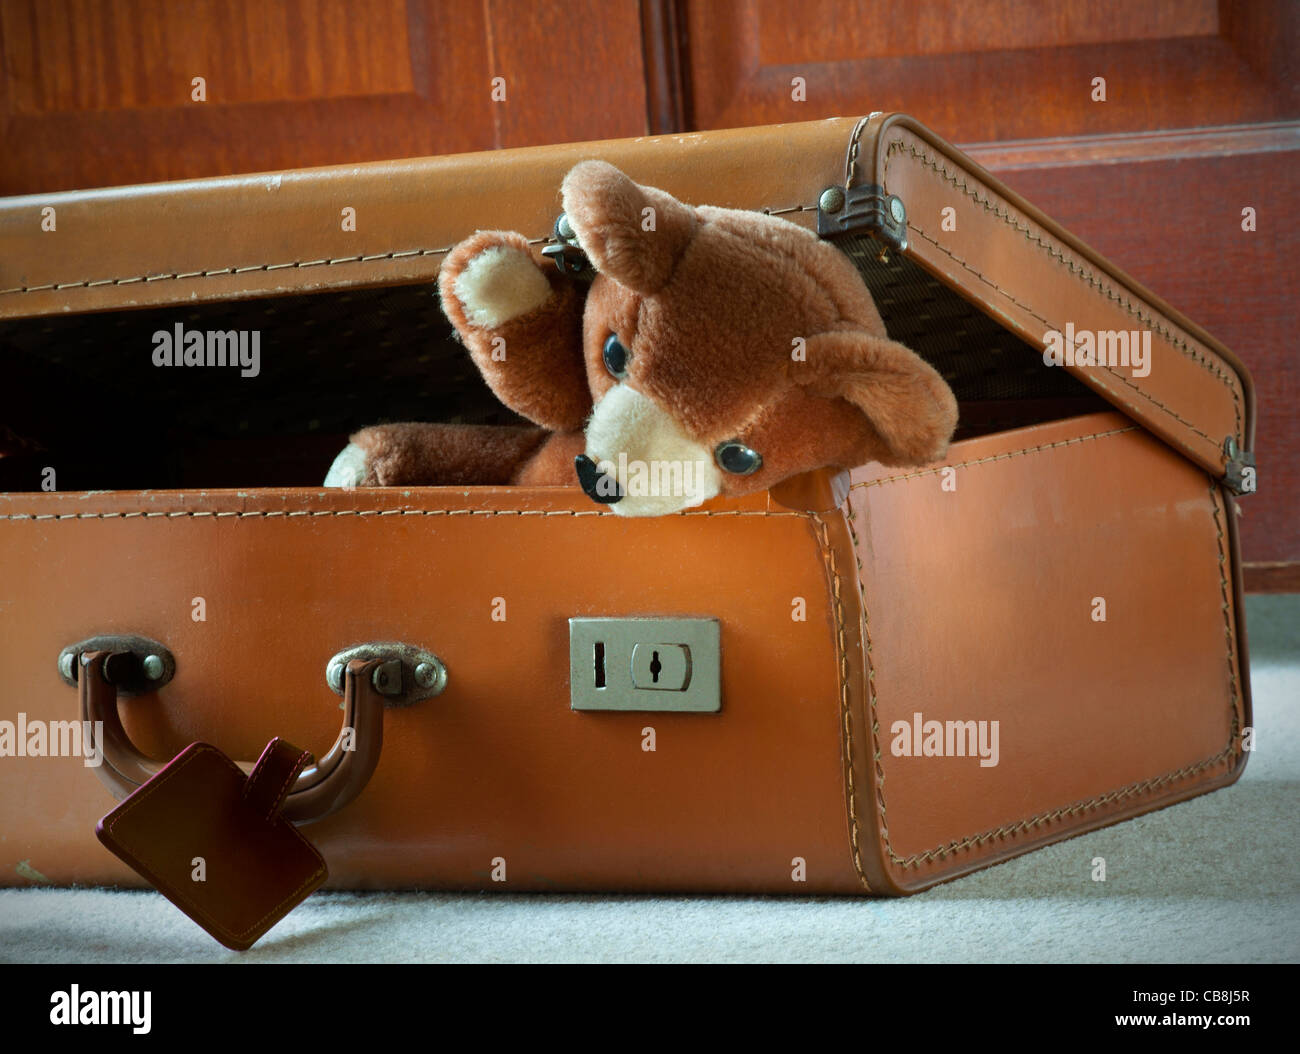 Fête de l'ours en peluche emballée dans la valise en cuir de l'enfant des années 60 staycation est arrivé prêt voyage jouets de voyage déménagement maison déménagement nouvelle maison Banque D'Images